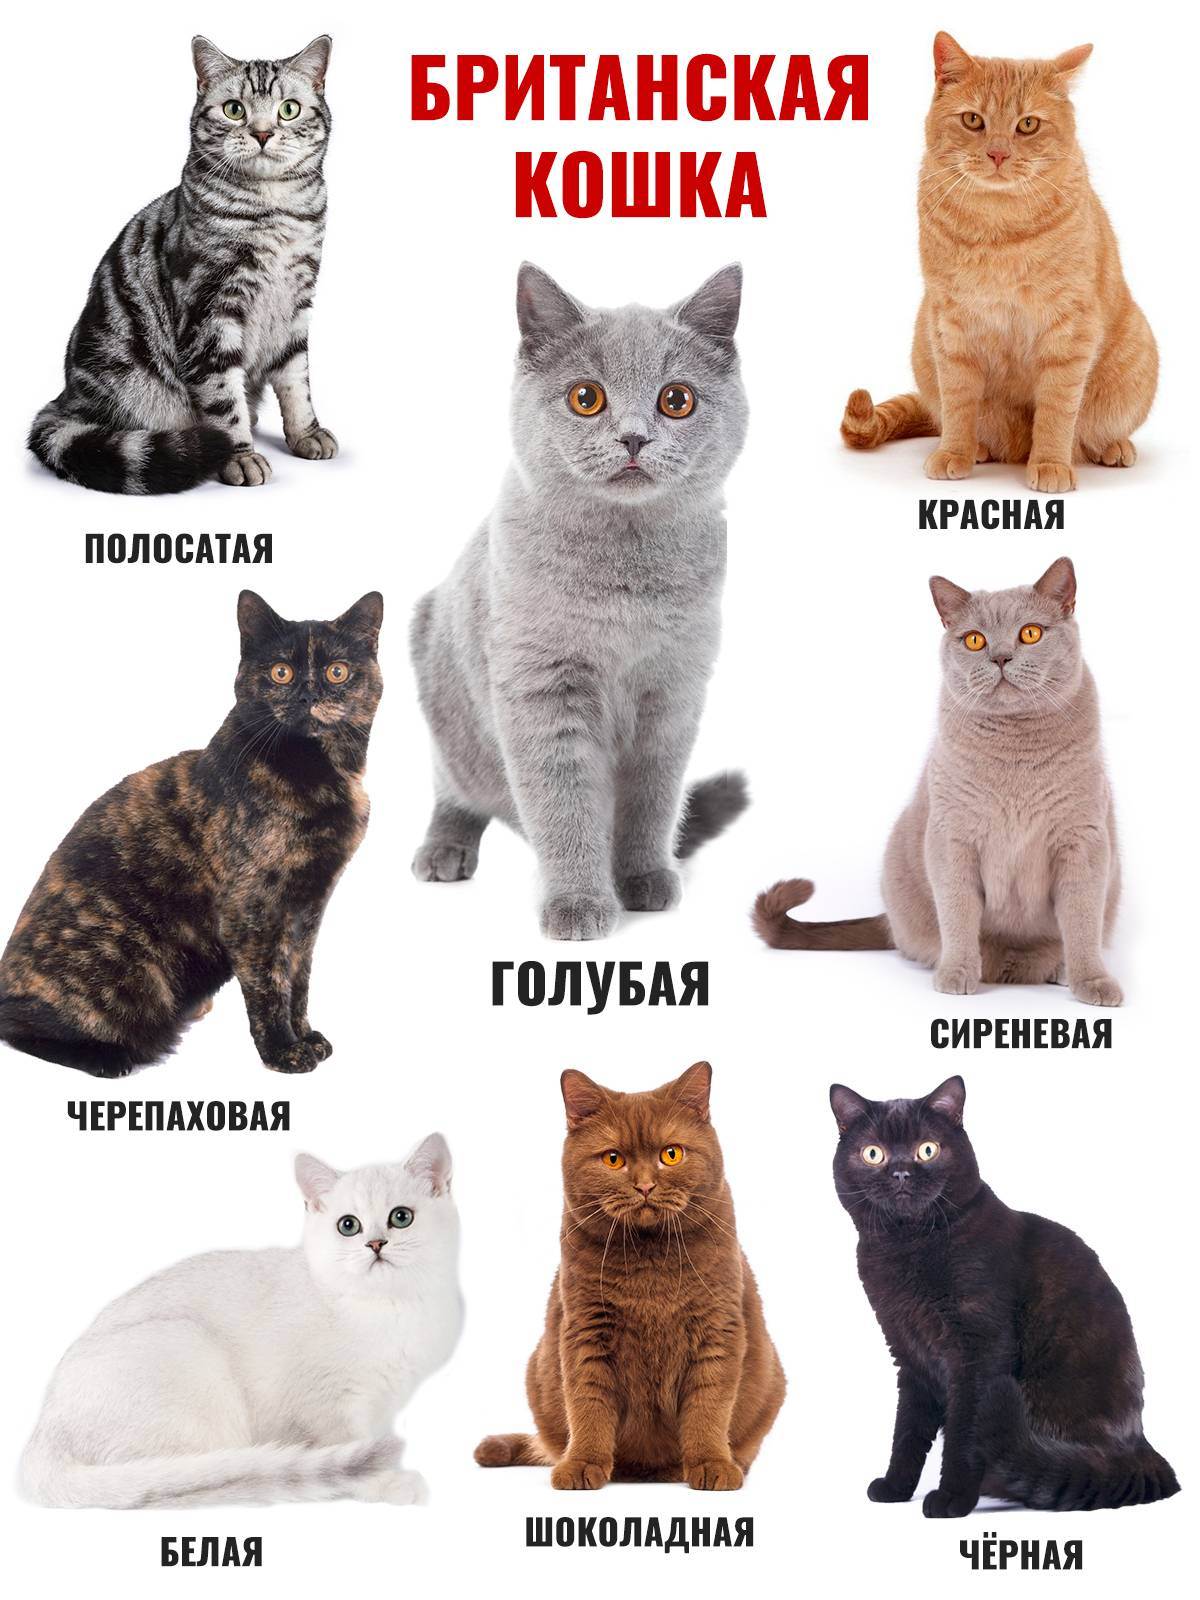 Британская кошка: особенности породы